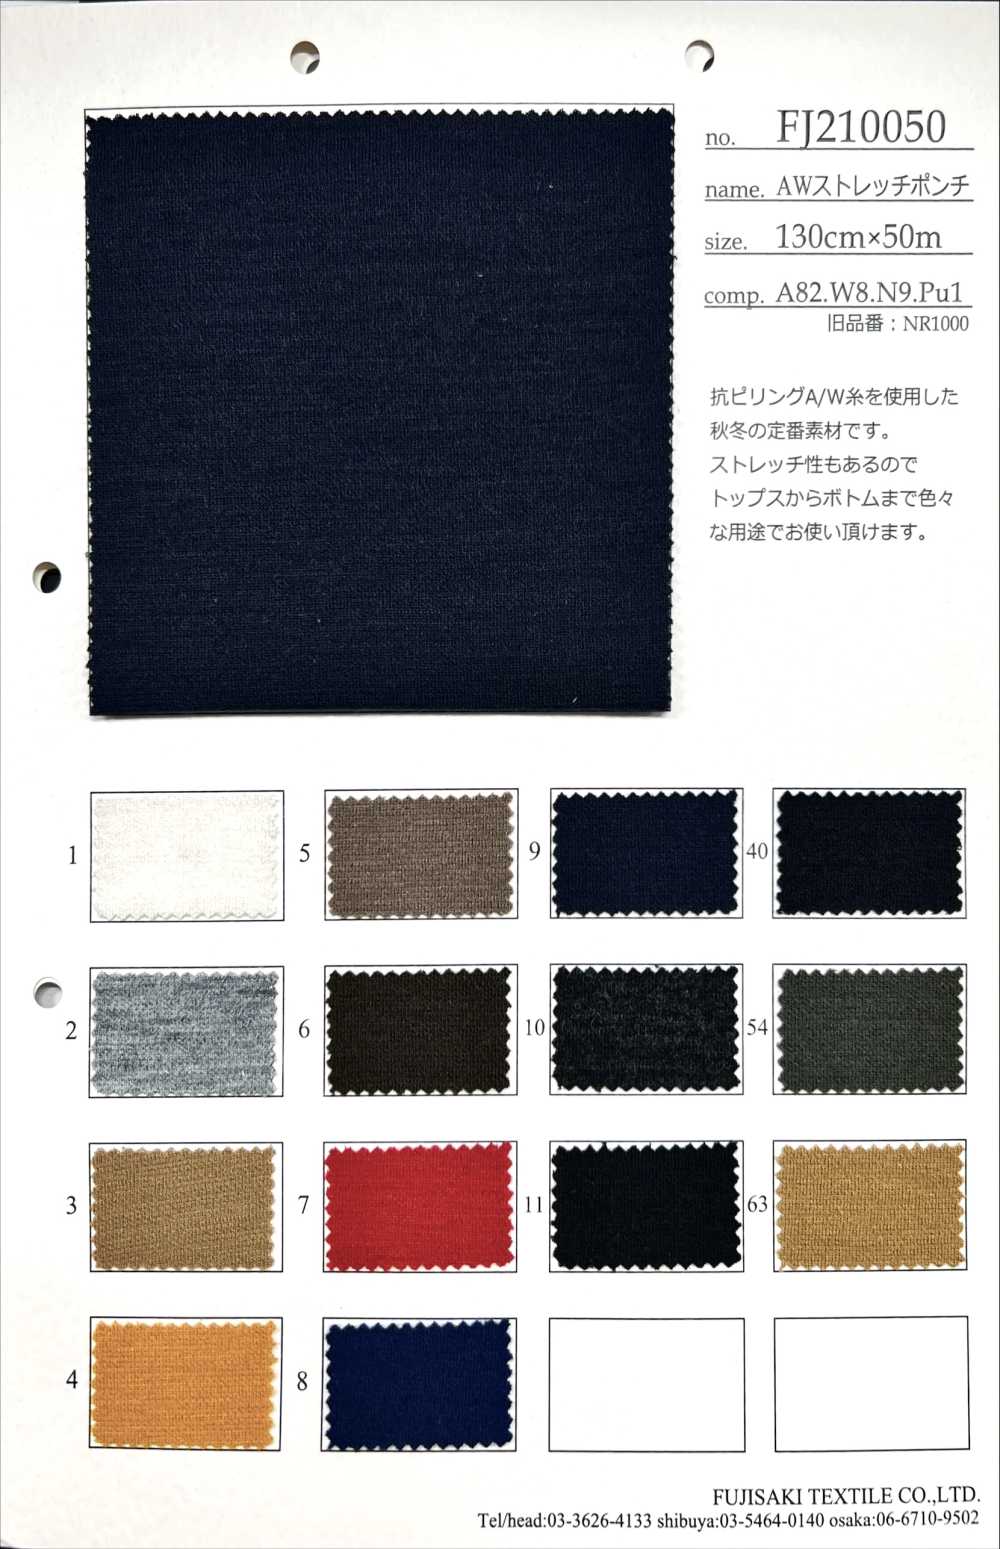 FJ210050 Ponte Elástico AW[Fabrica Textil] Fujisaki Textile